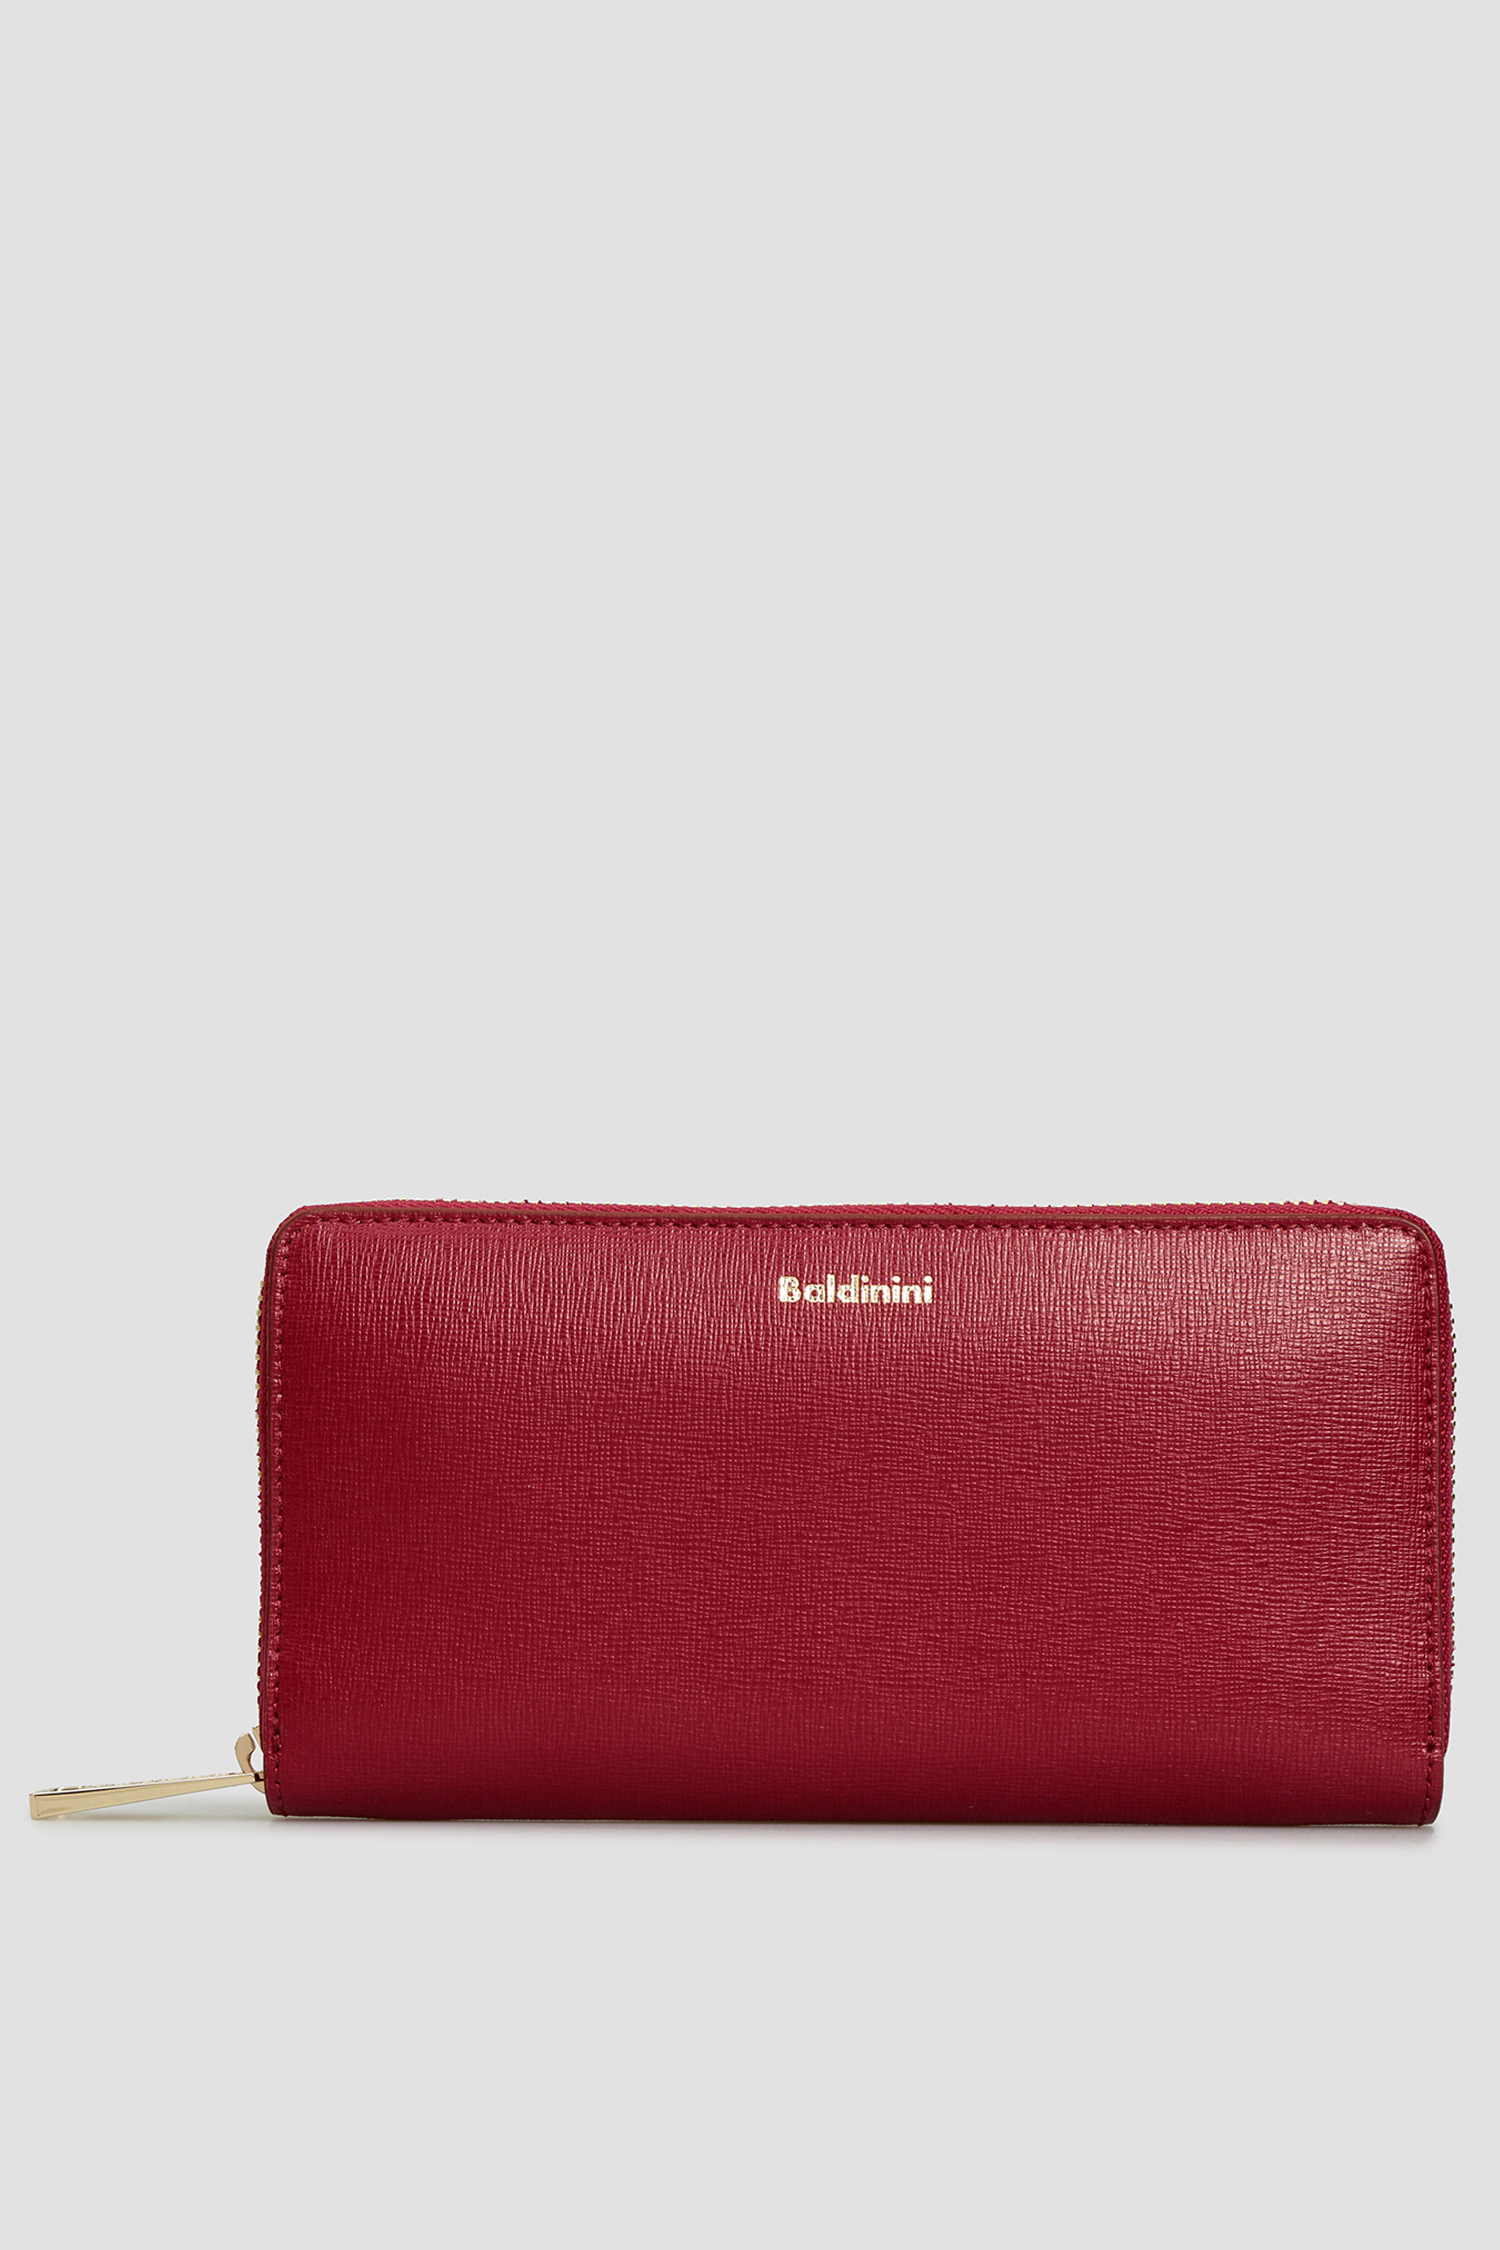 Бордовый кожаный кошелек для девушек Baldinini P2B002SAFF;7000